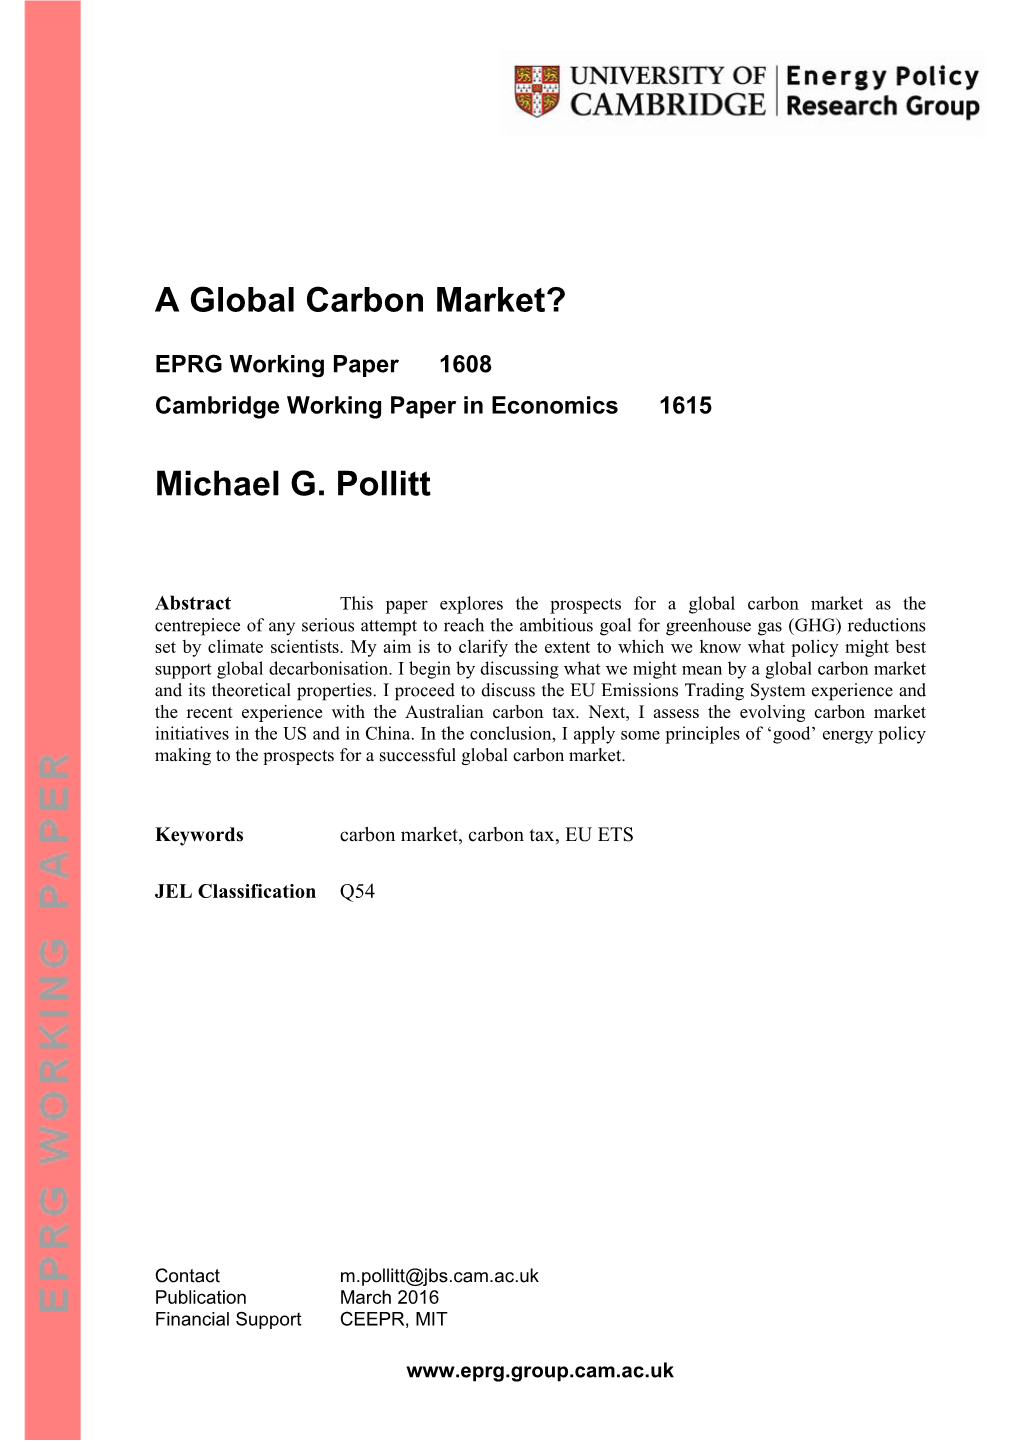 A Global Carbon Market? Michael G. Pollitt